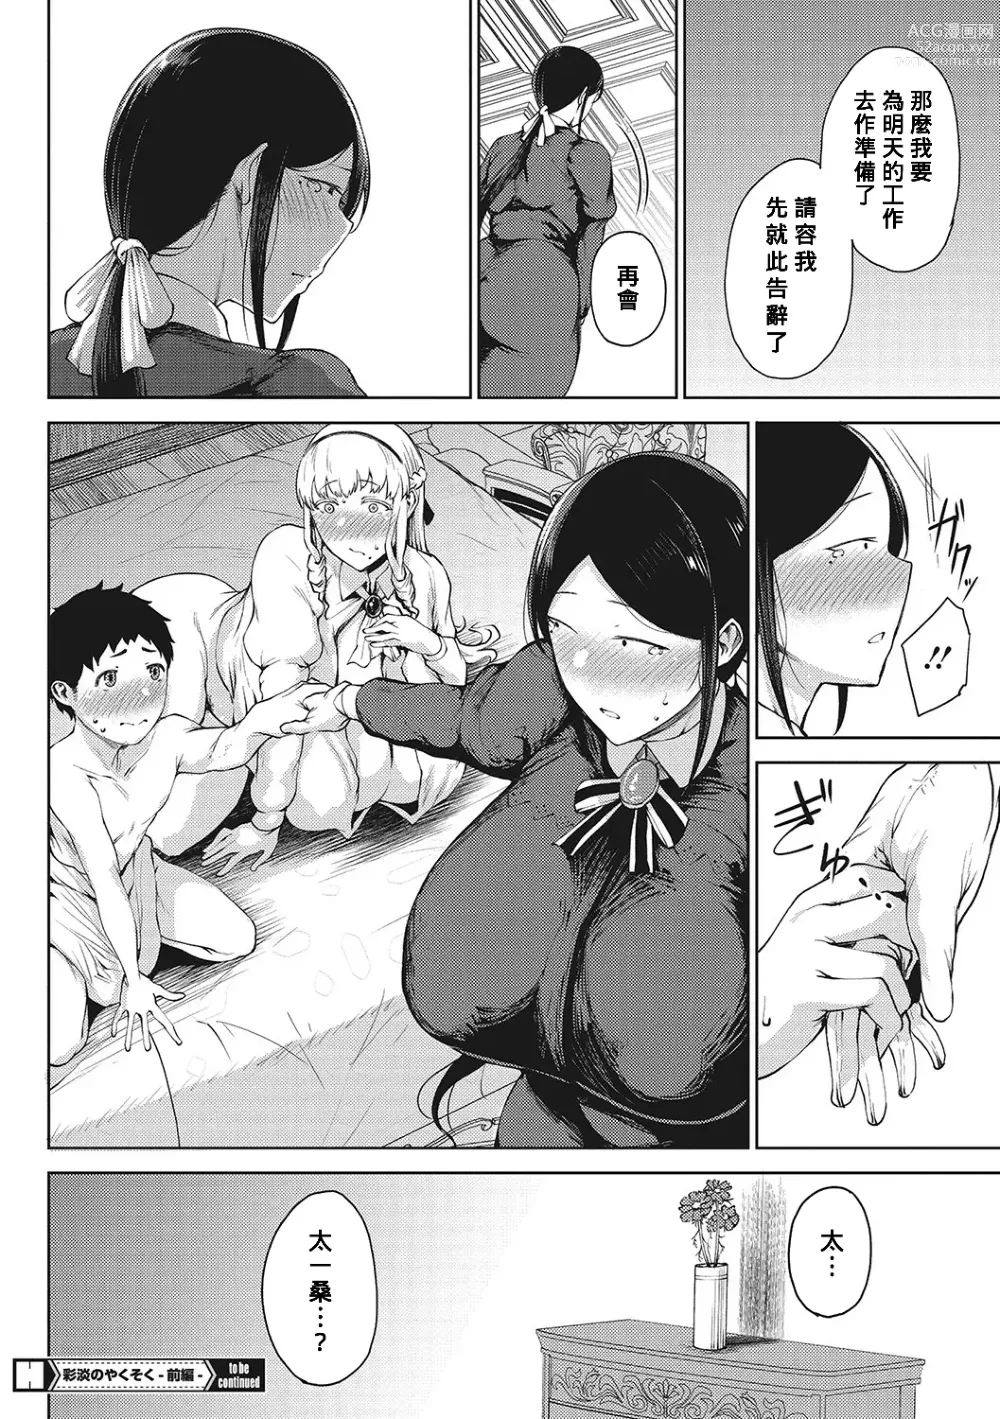 Page 24 of manga Saitan no Yakusoku Zenpen